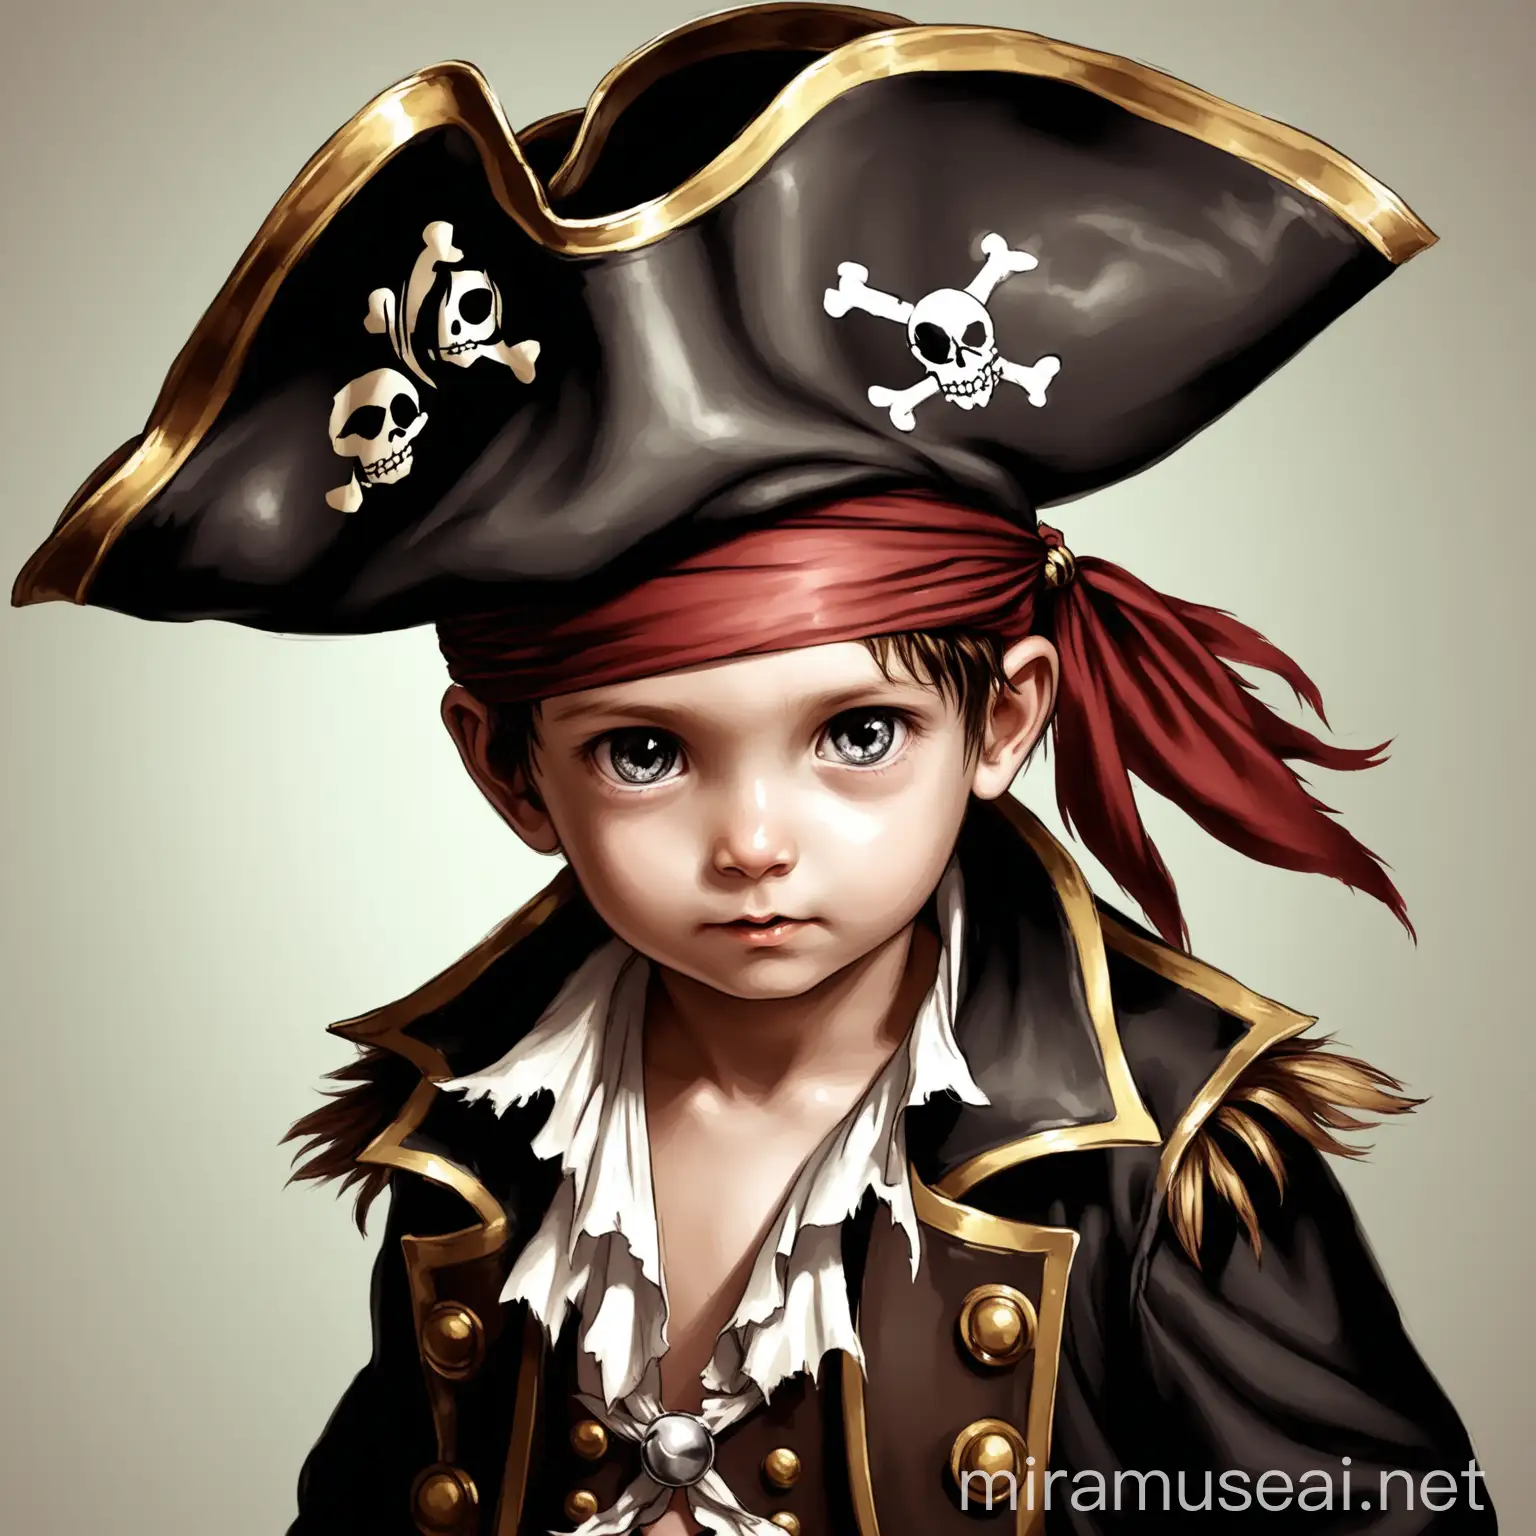 Adventurous Child Pirate Exploring Treasure Island